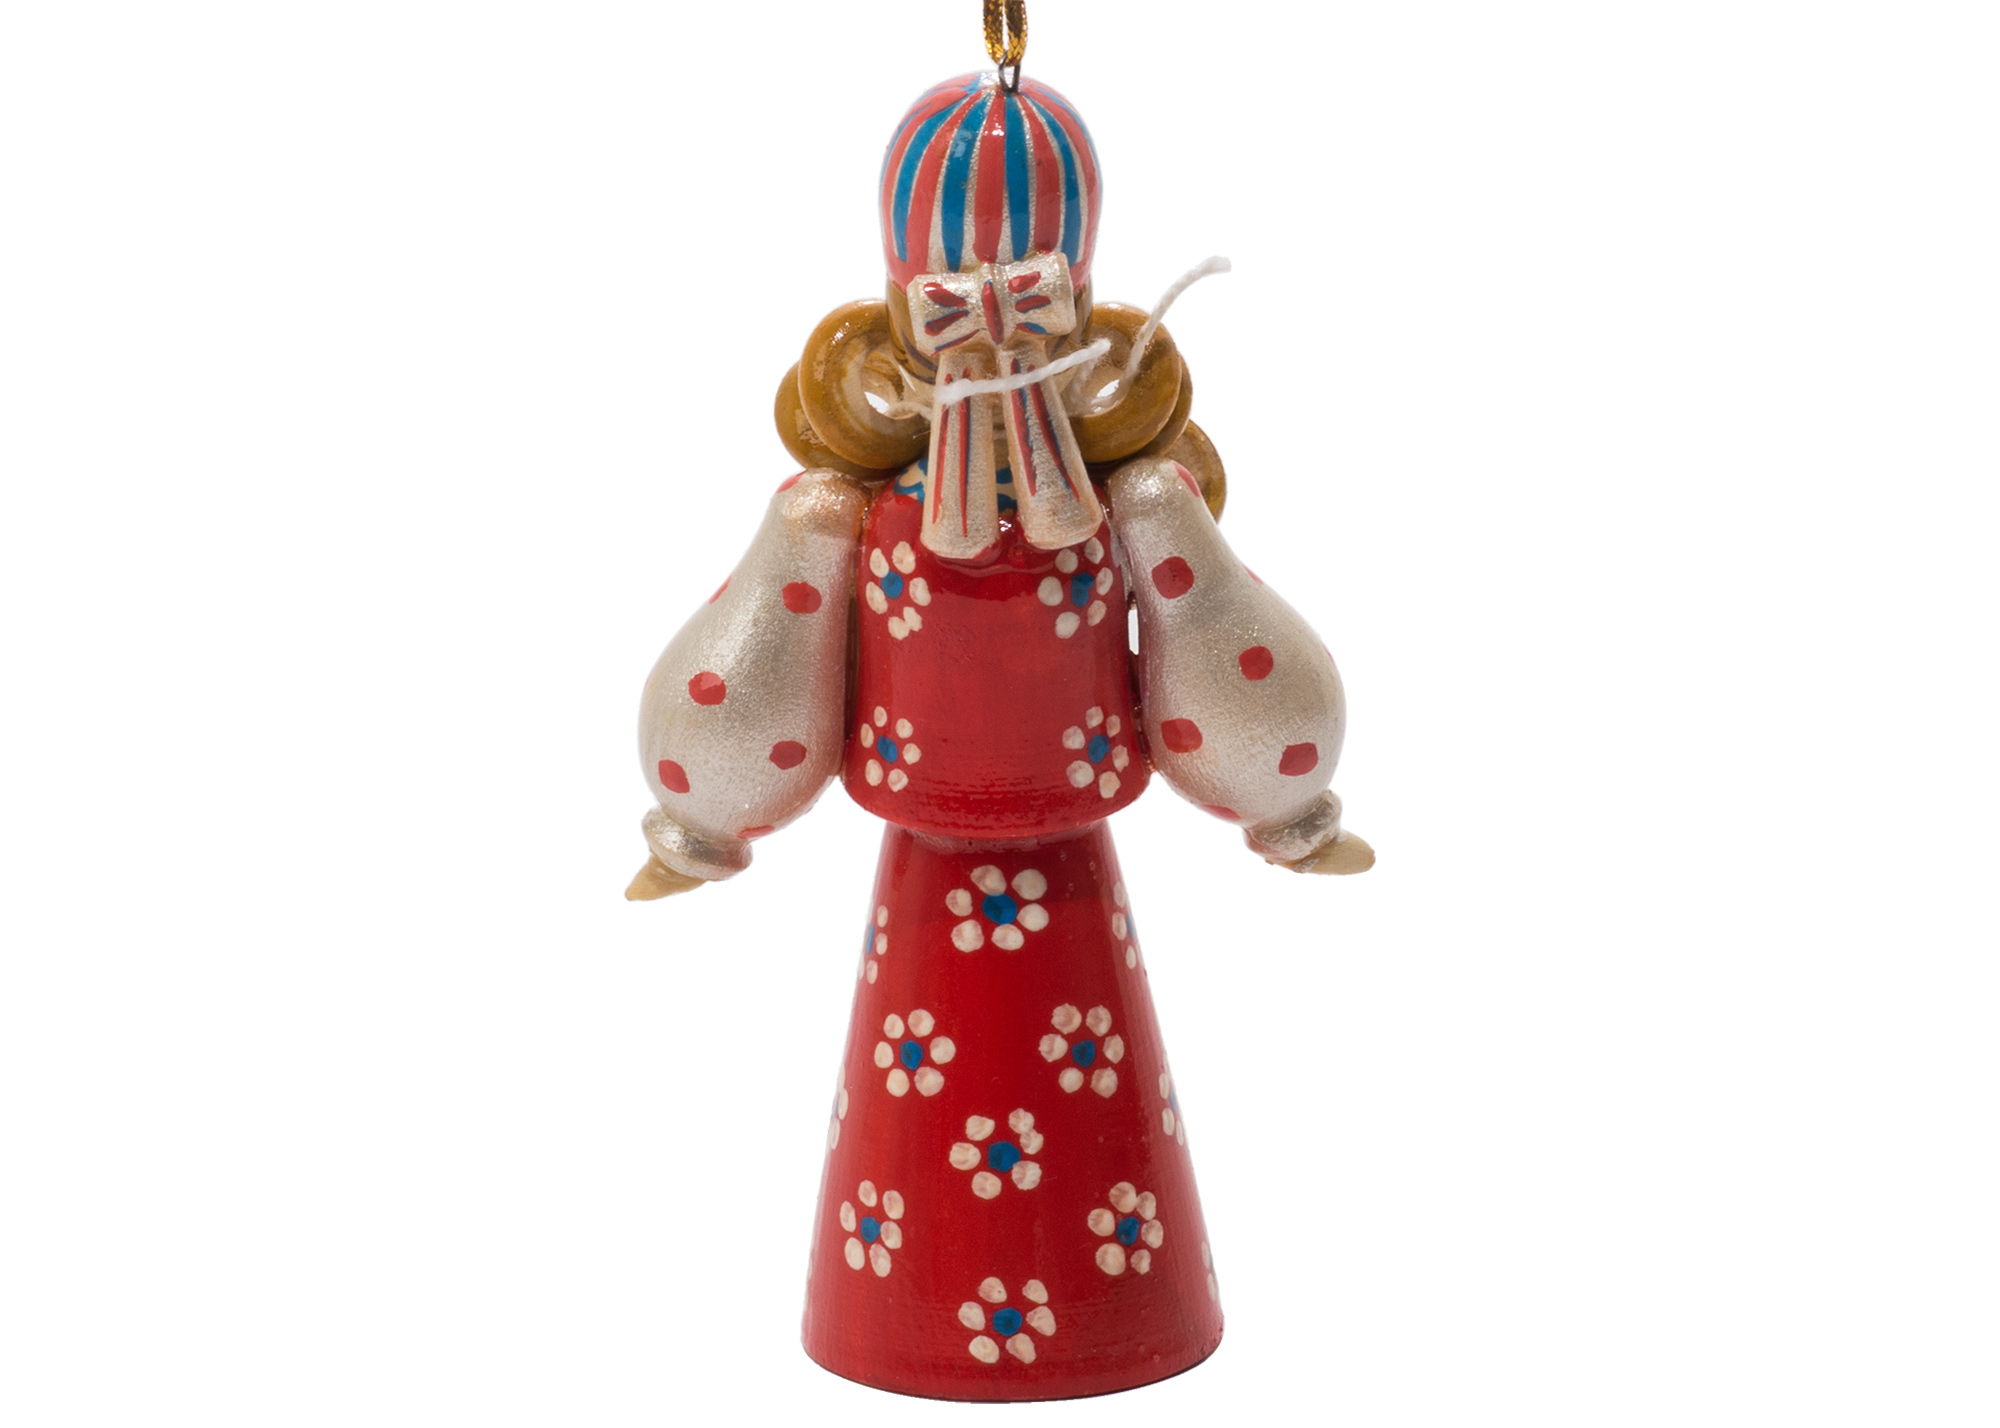 Buy Russian Folk Bagel Vendor Ornament 4.25" at GoldenCockerel.com